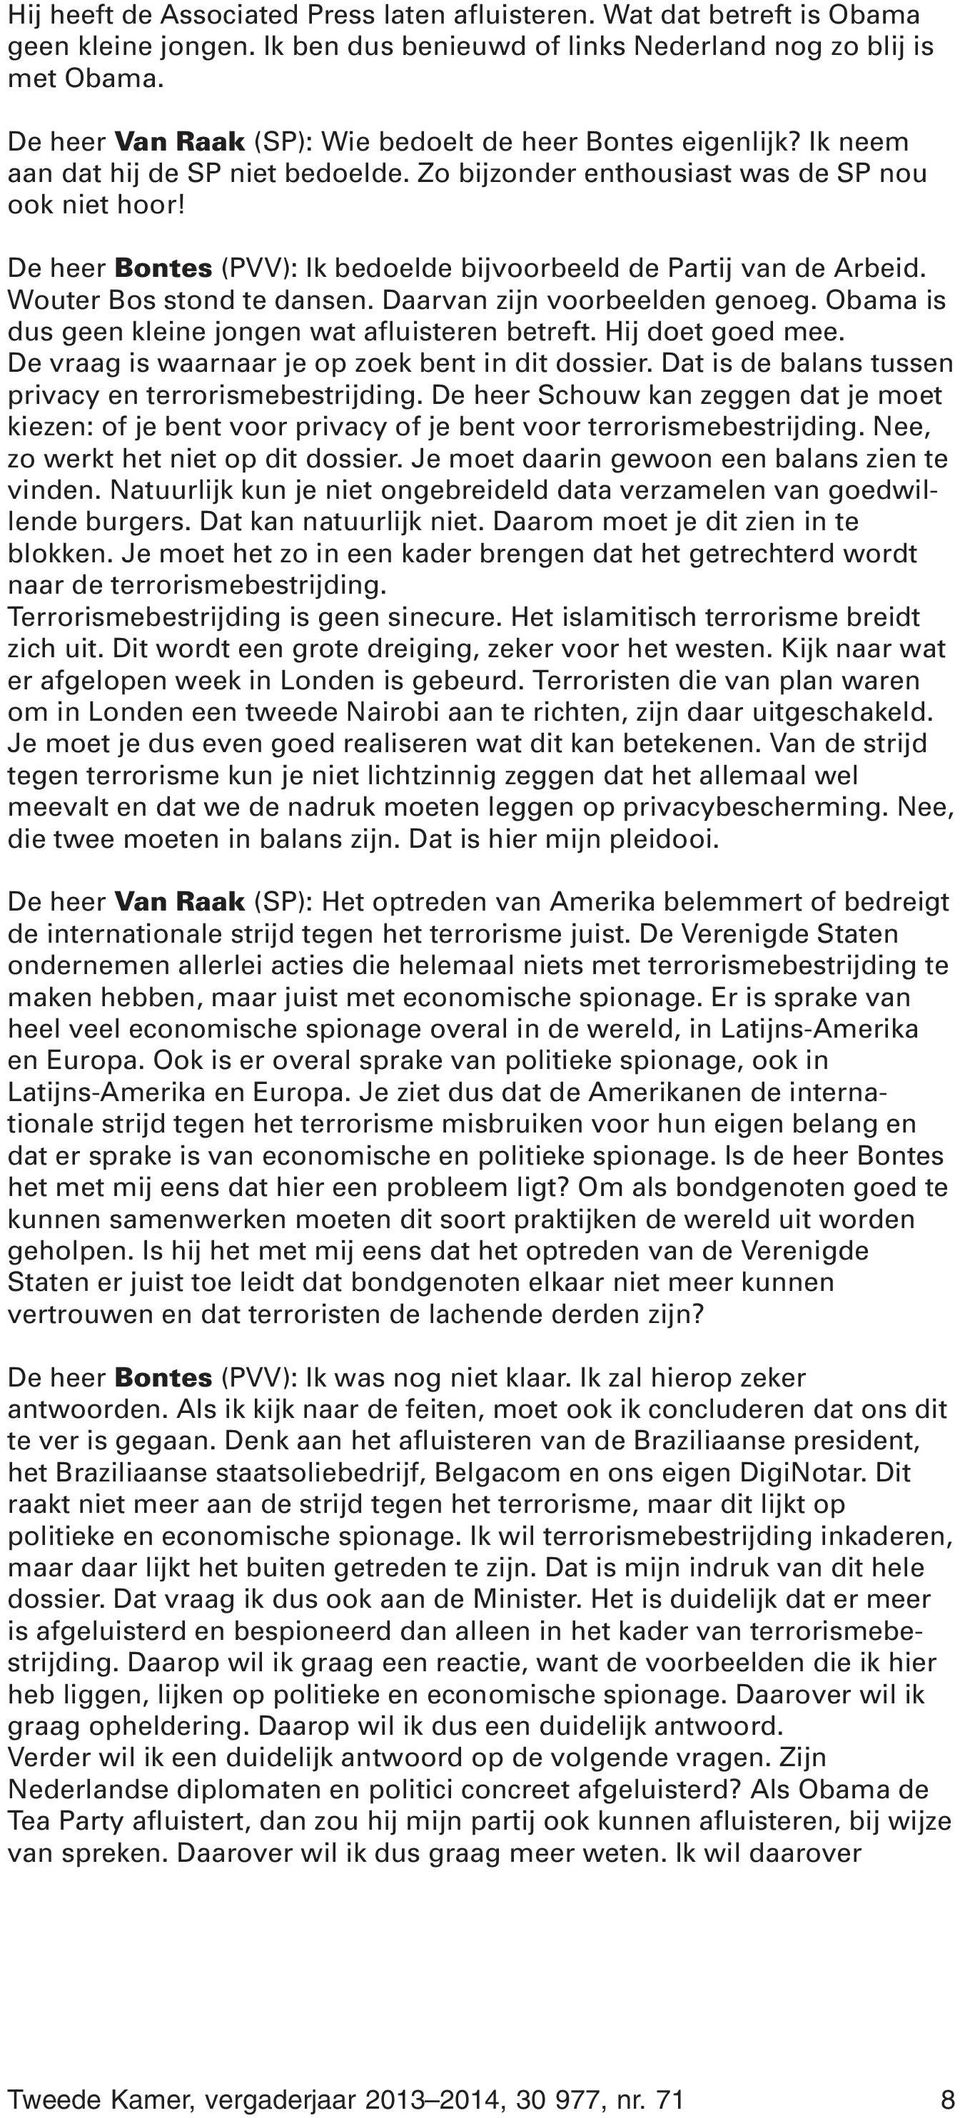 De heer Bontes (PVV): Ik bedoelde bijvoorbeeld de Partij van de Arbeid. Wouter Bos stond te dansen. Daarvan zijn voorbeelden genoeg. Obama is dus geen kleine jongen wat afluisteren betreft.